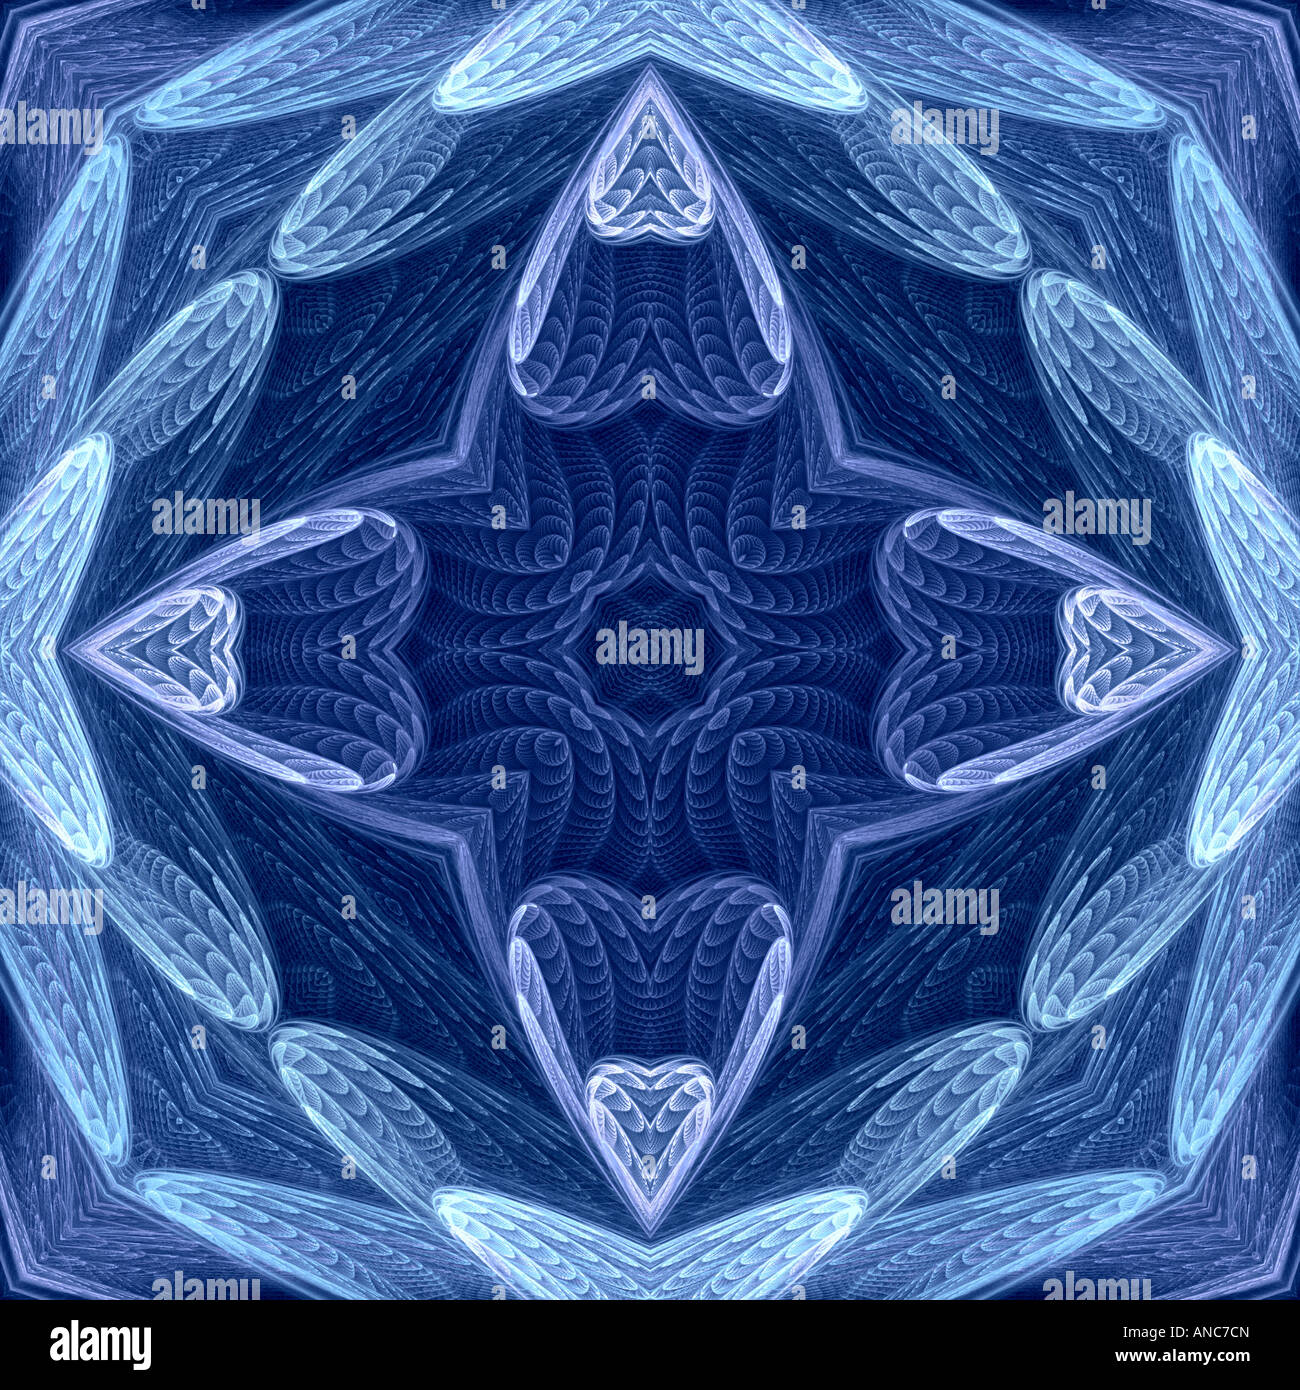 Abstract fractal image d'une coquille en couches dans le blues star Banque D'Images